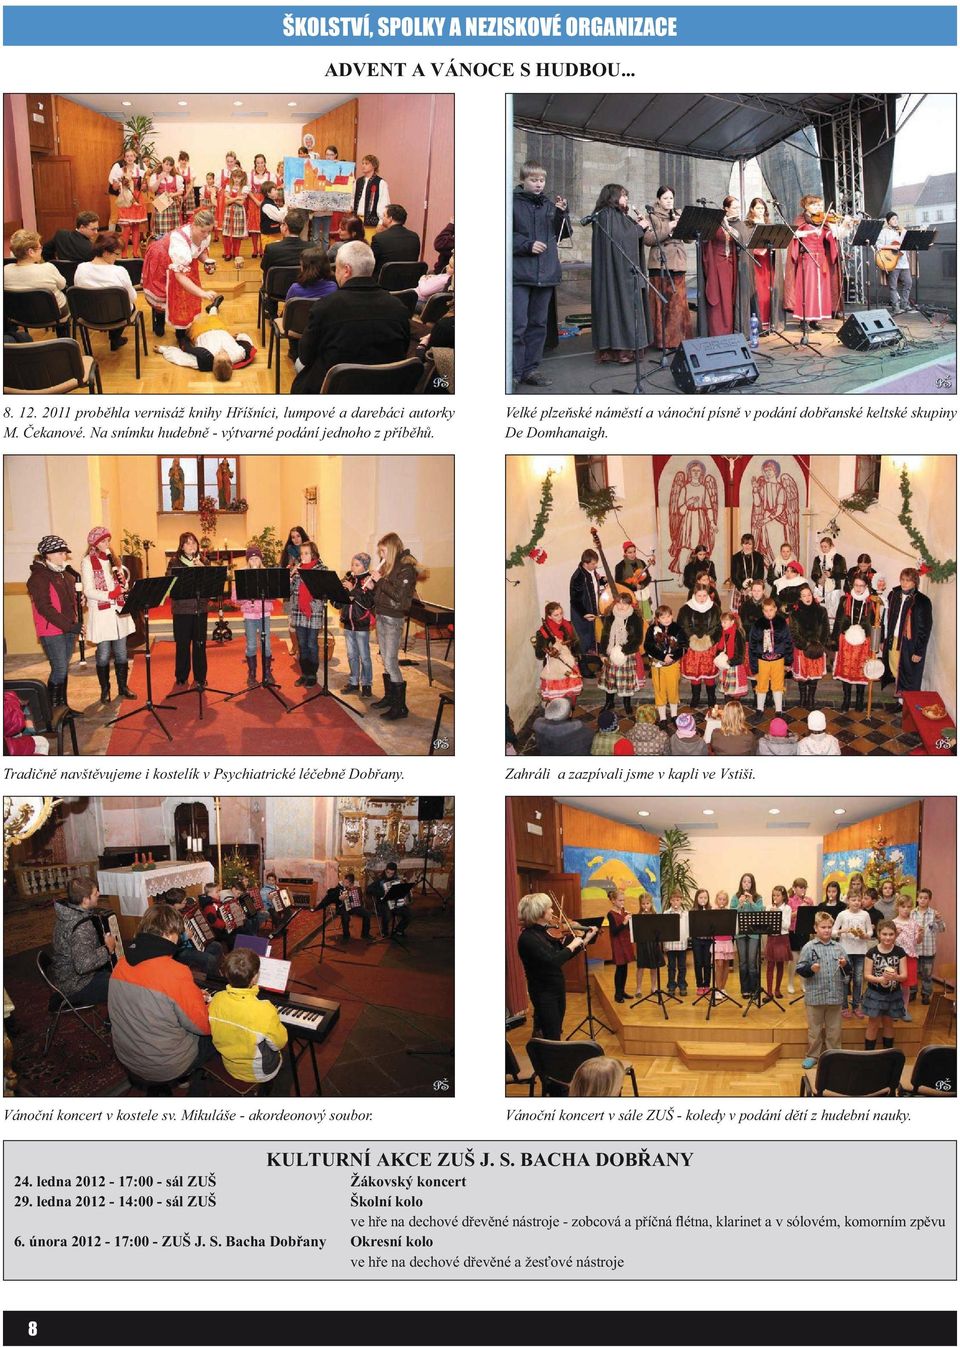 Tradičně navštěvujeme i kostelík v Psychiatrické léčebně Dobřany. Zahráli a zazpívali jsme v kapli ve Vstiši. Vánoční koncert v kostele sv. Mikuláše - akordeonový soubor.